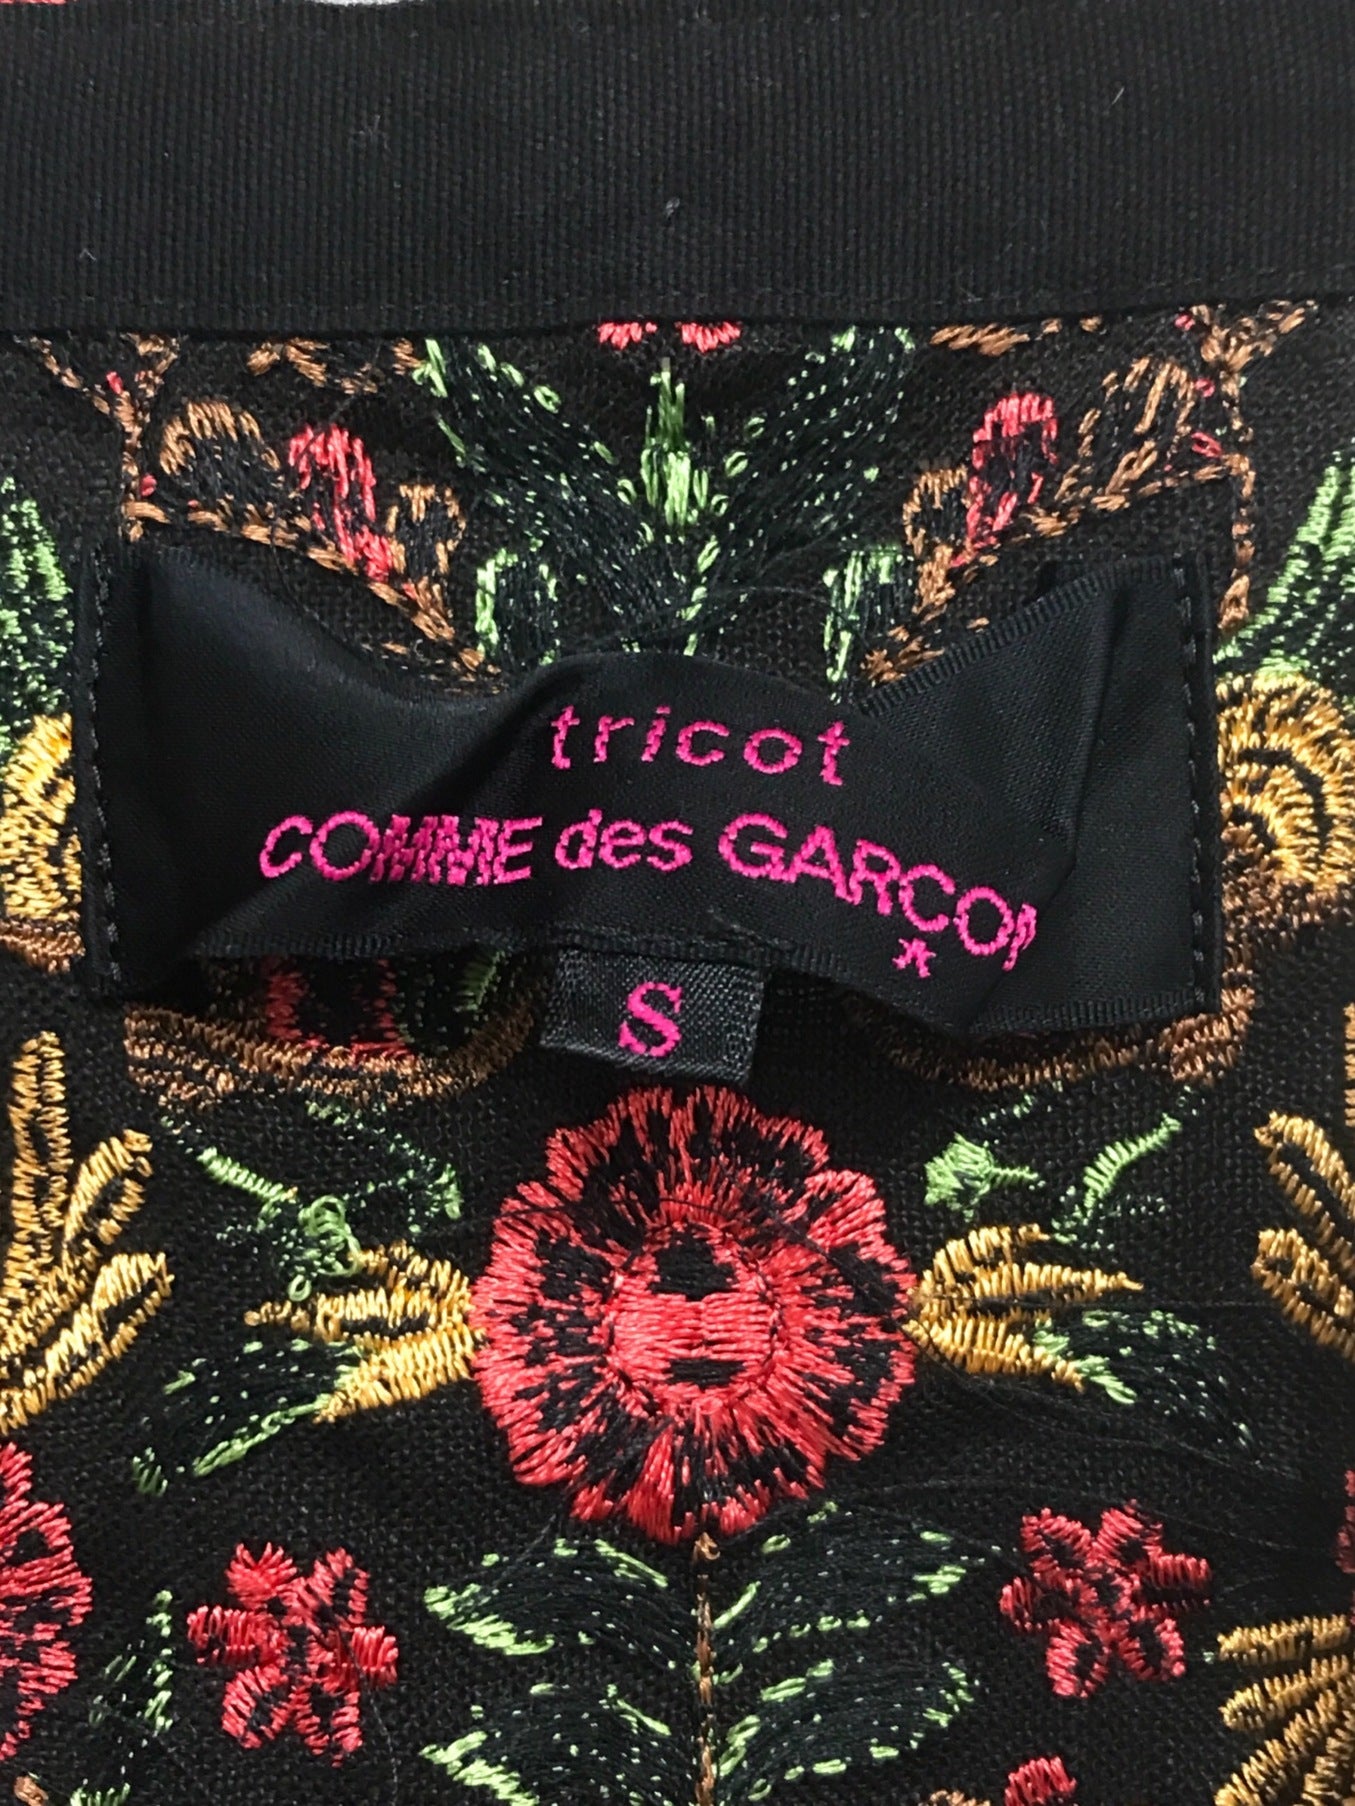 Tricot Comme des Garcons环绕裙TE-S207